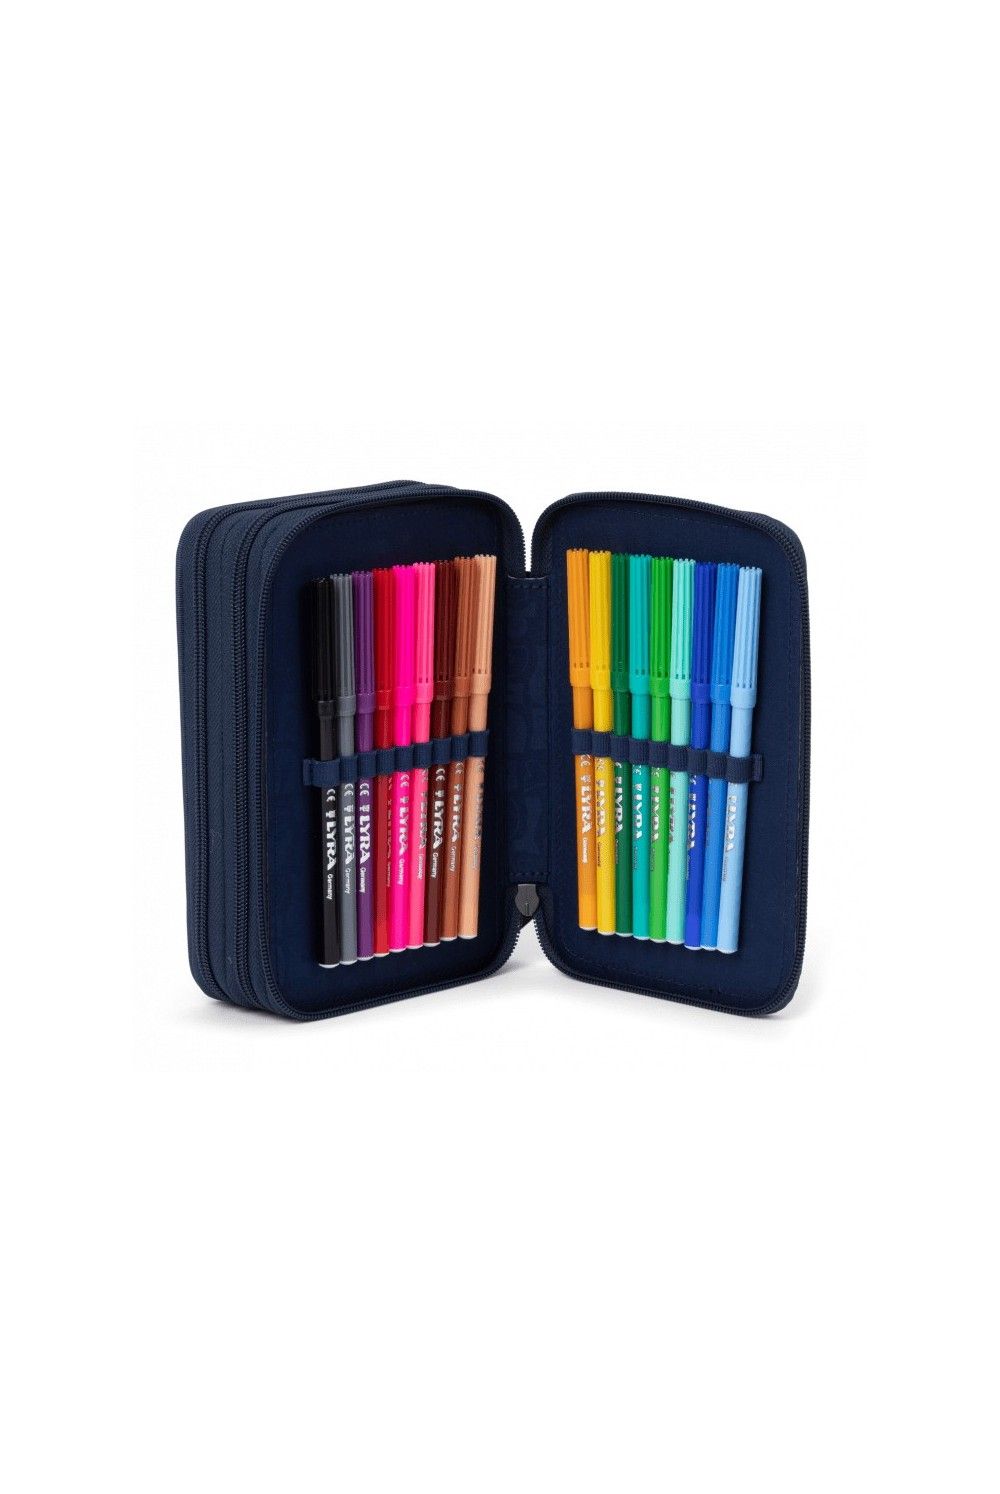 Ergobag maxi pencil case KorallBär